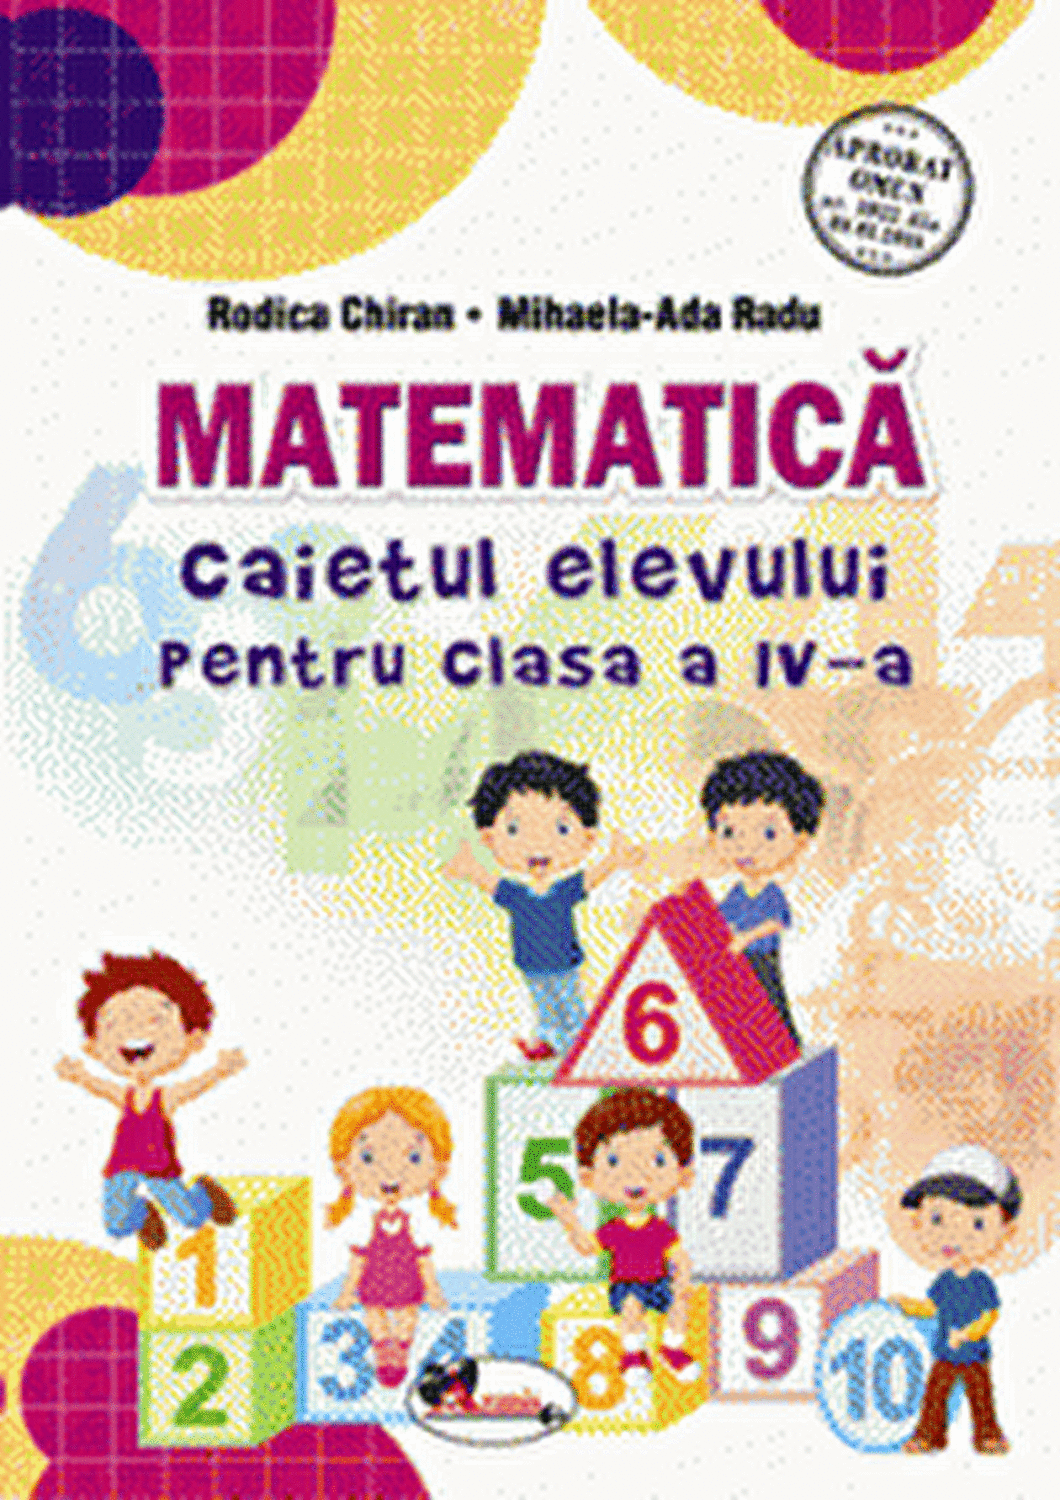 Matematica – Caietul elevului pentru clasa a IV-a | Rodica Chiran, Mihaela-Ada Radu Aramis 2022